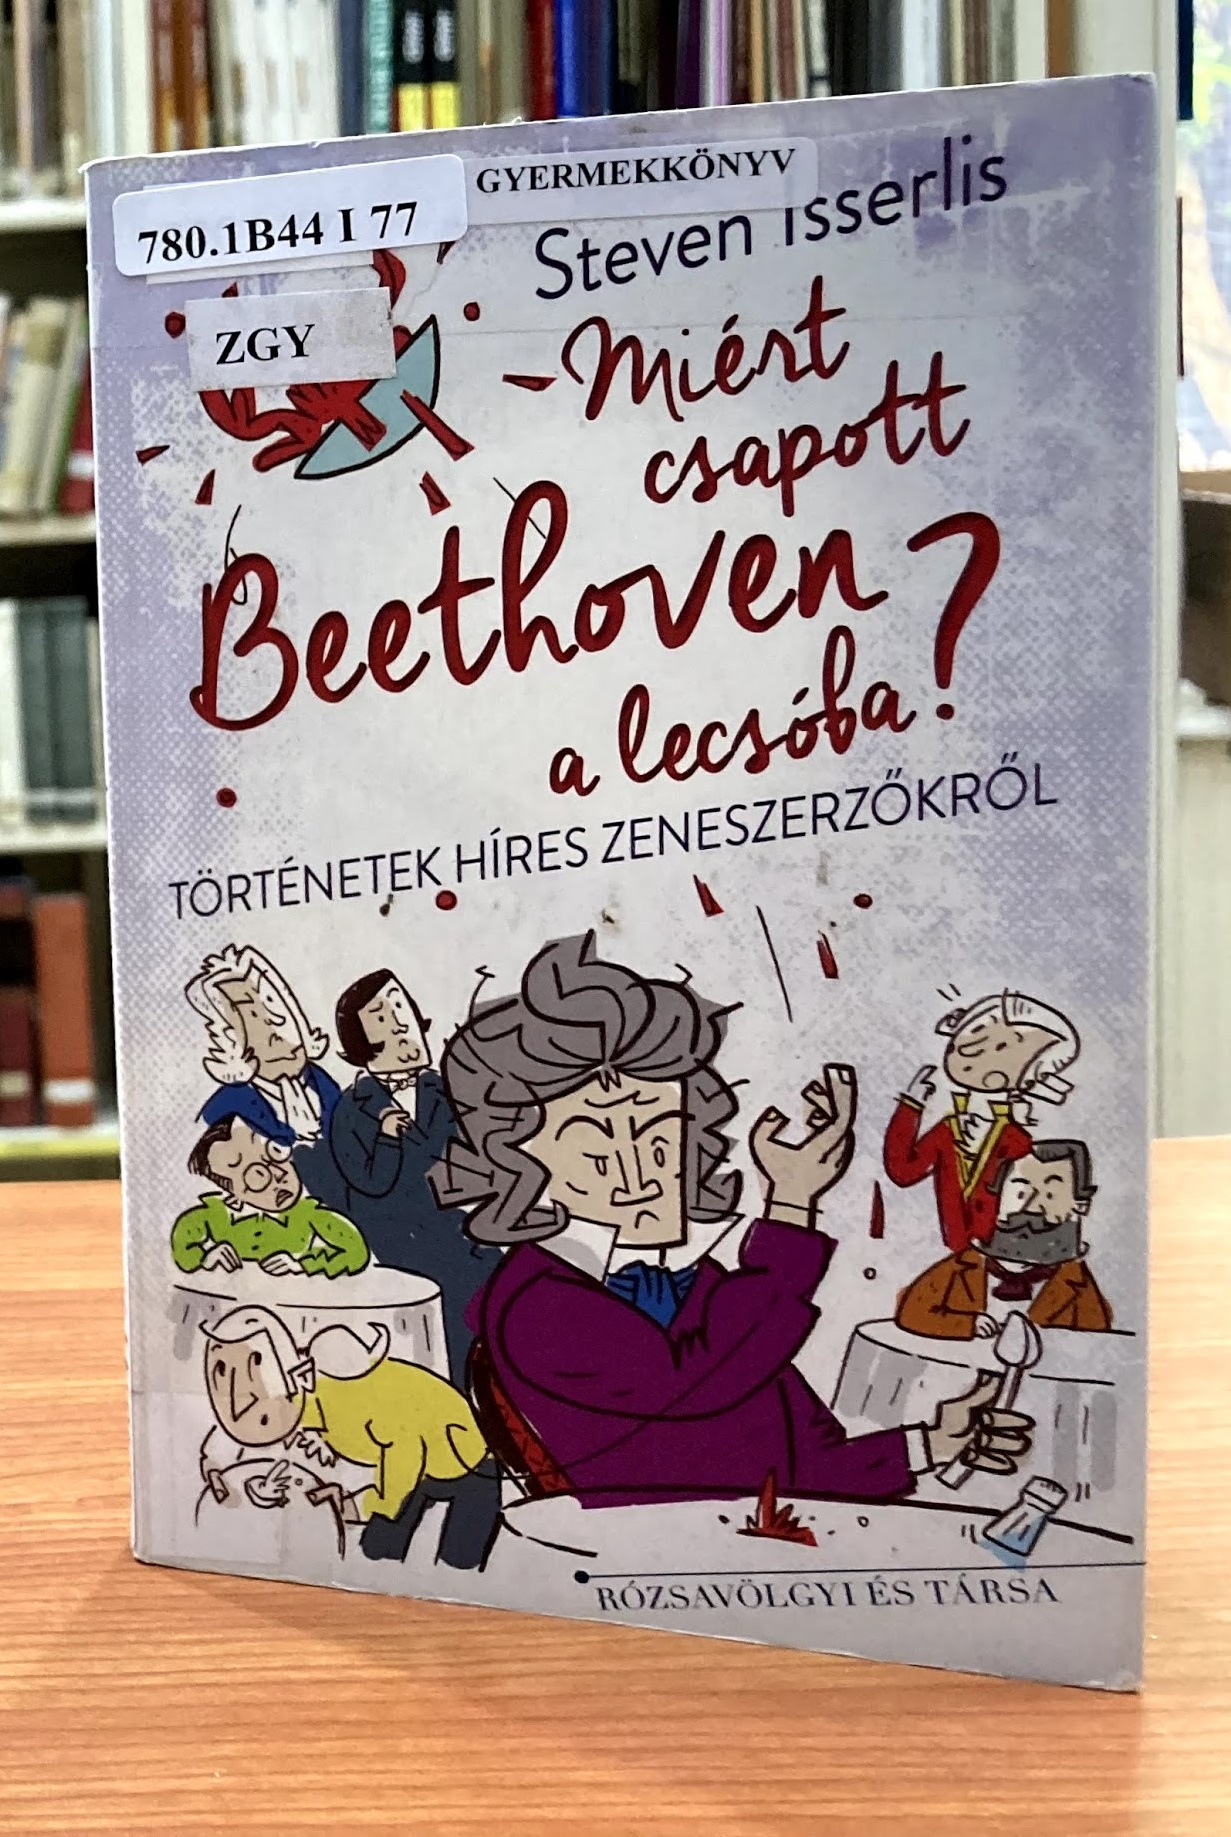 Steven Isserlis Miért csapott Beethoven a lecsóba? című könyv borítója